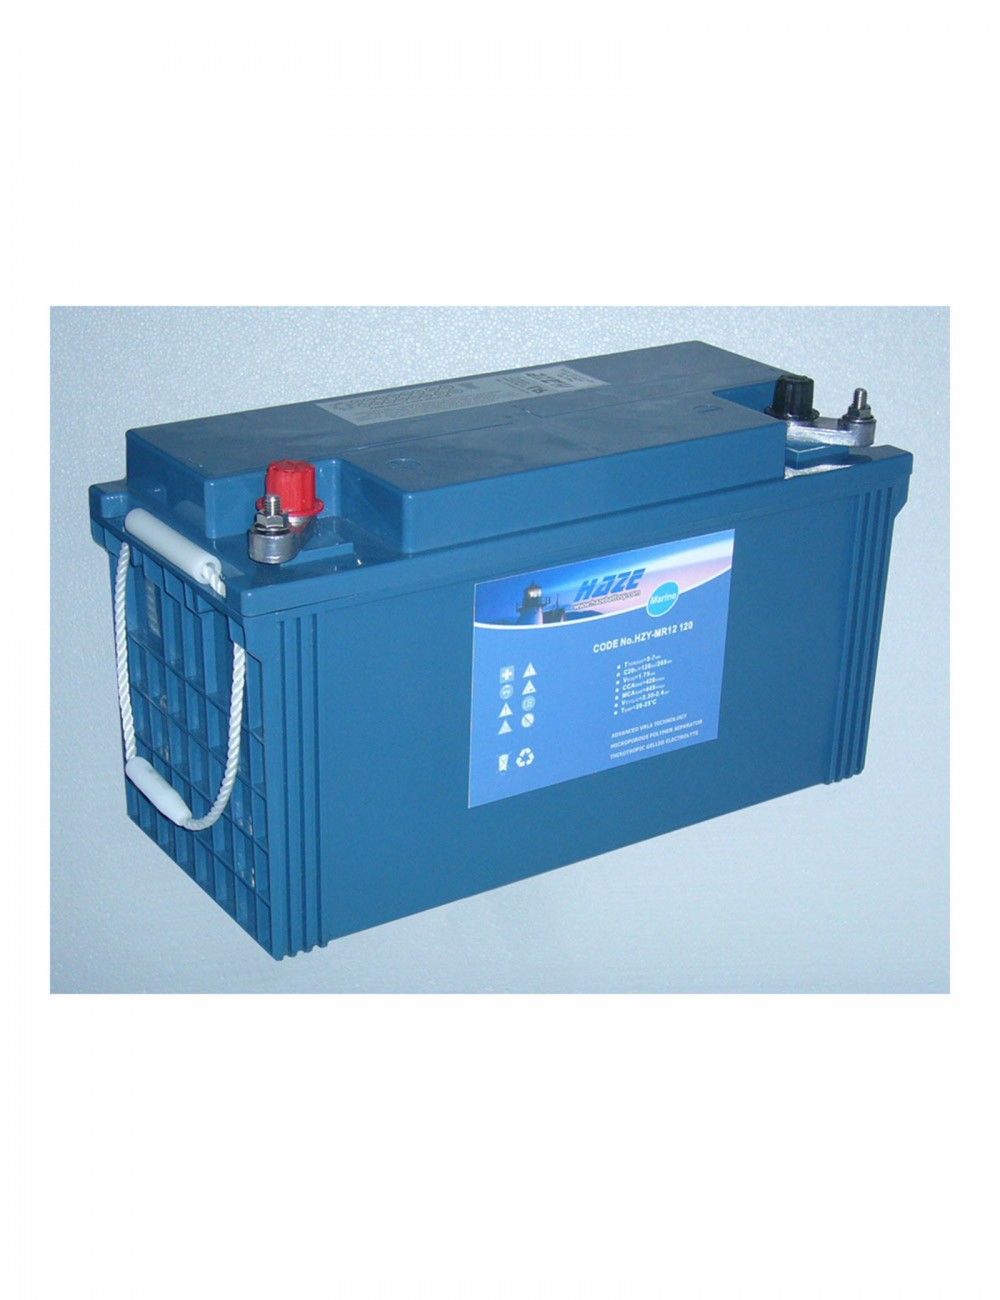 Batterie gel rechargeable 12V 100Ah sans entretien et sans fuite  LX121000CSQRT - Cdiscount Auto